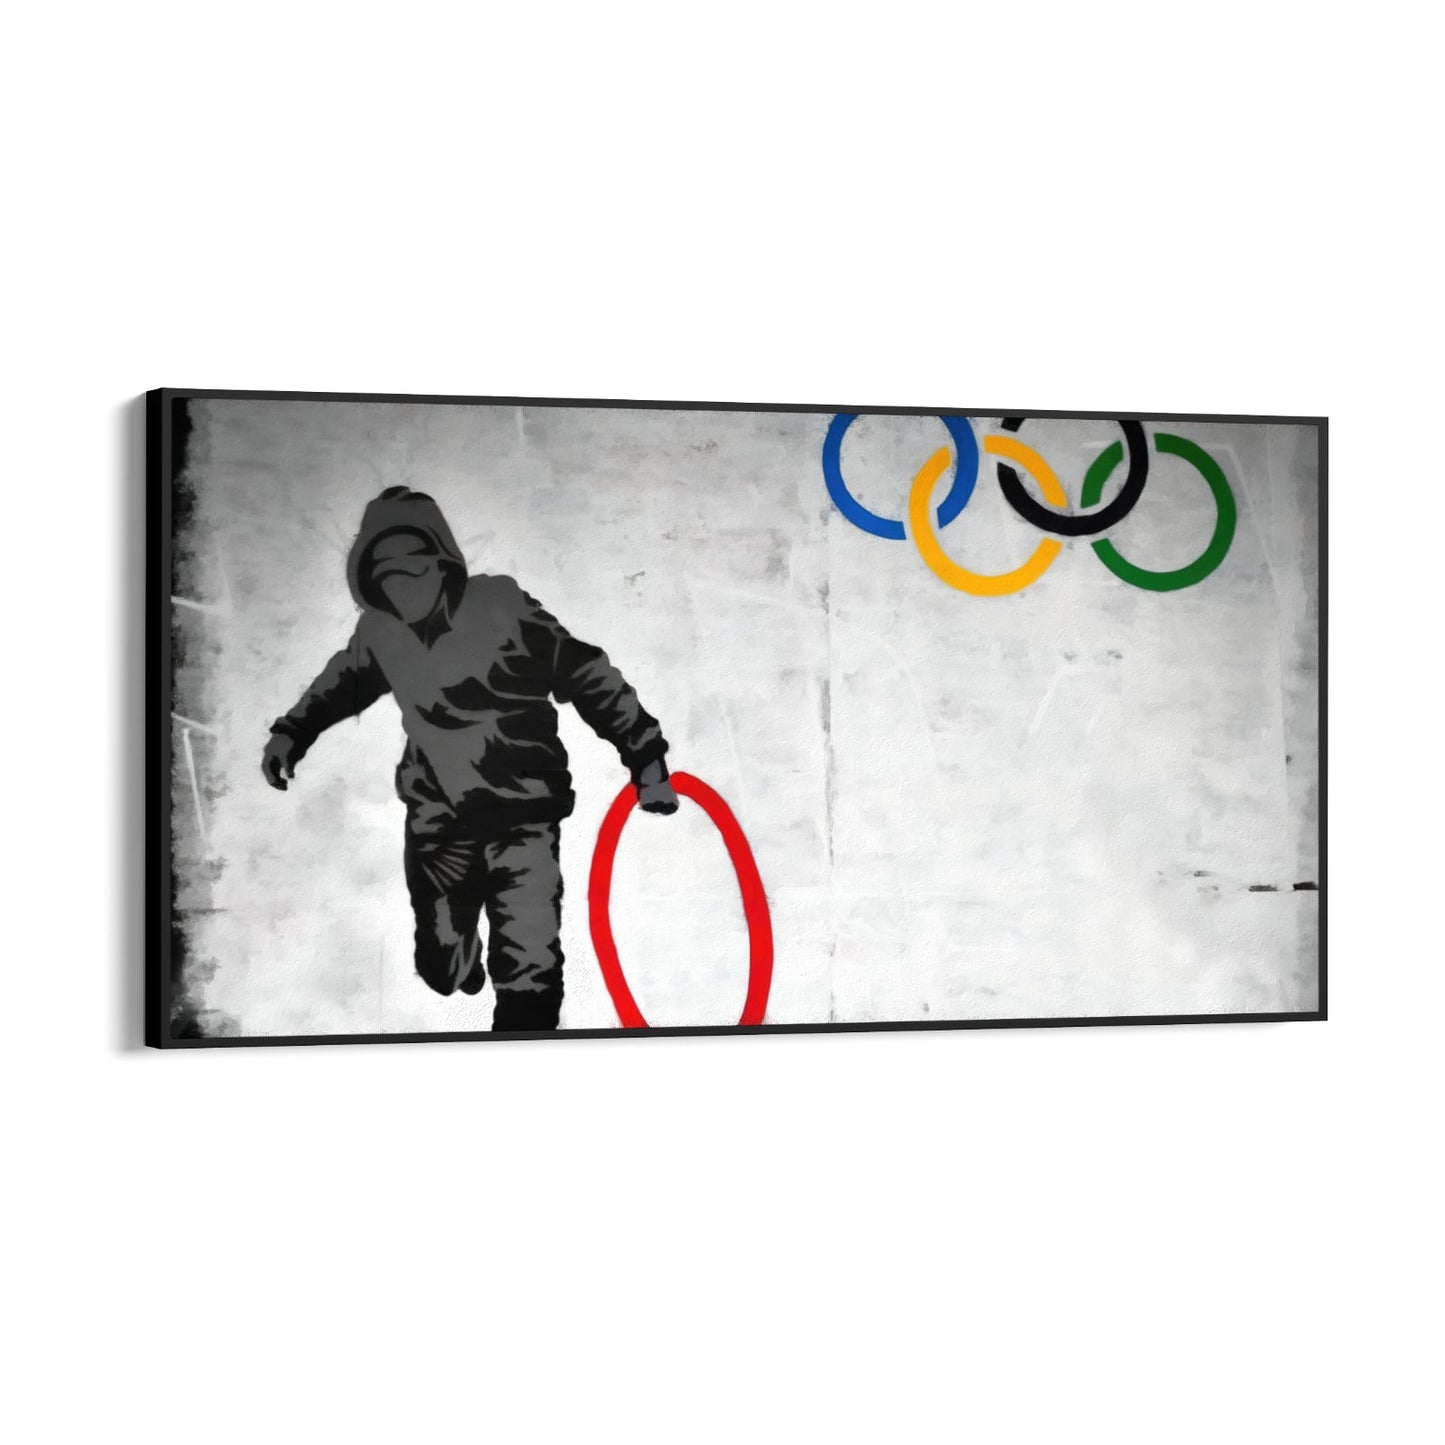 Olympic Rings Looter, Banksy